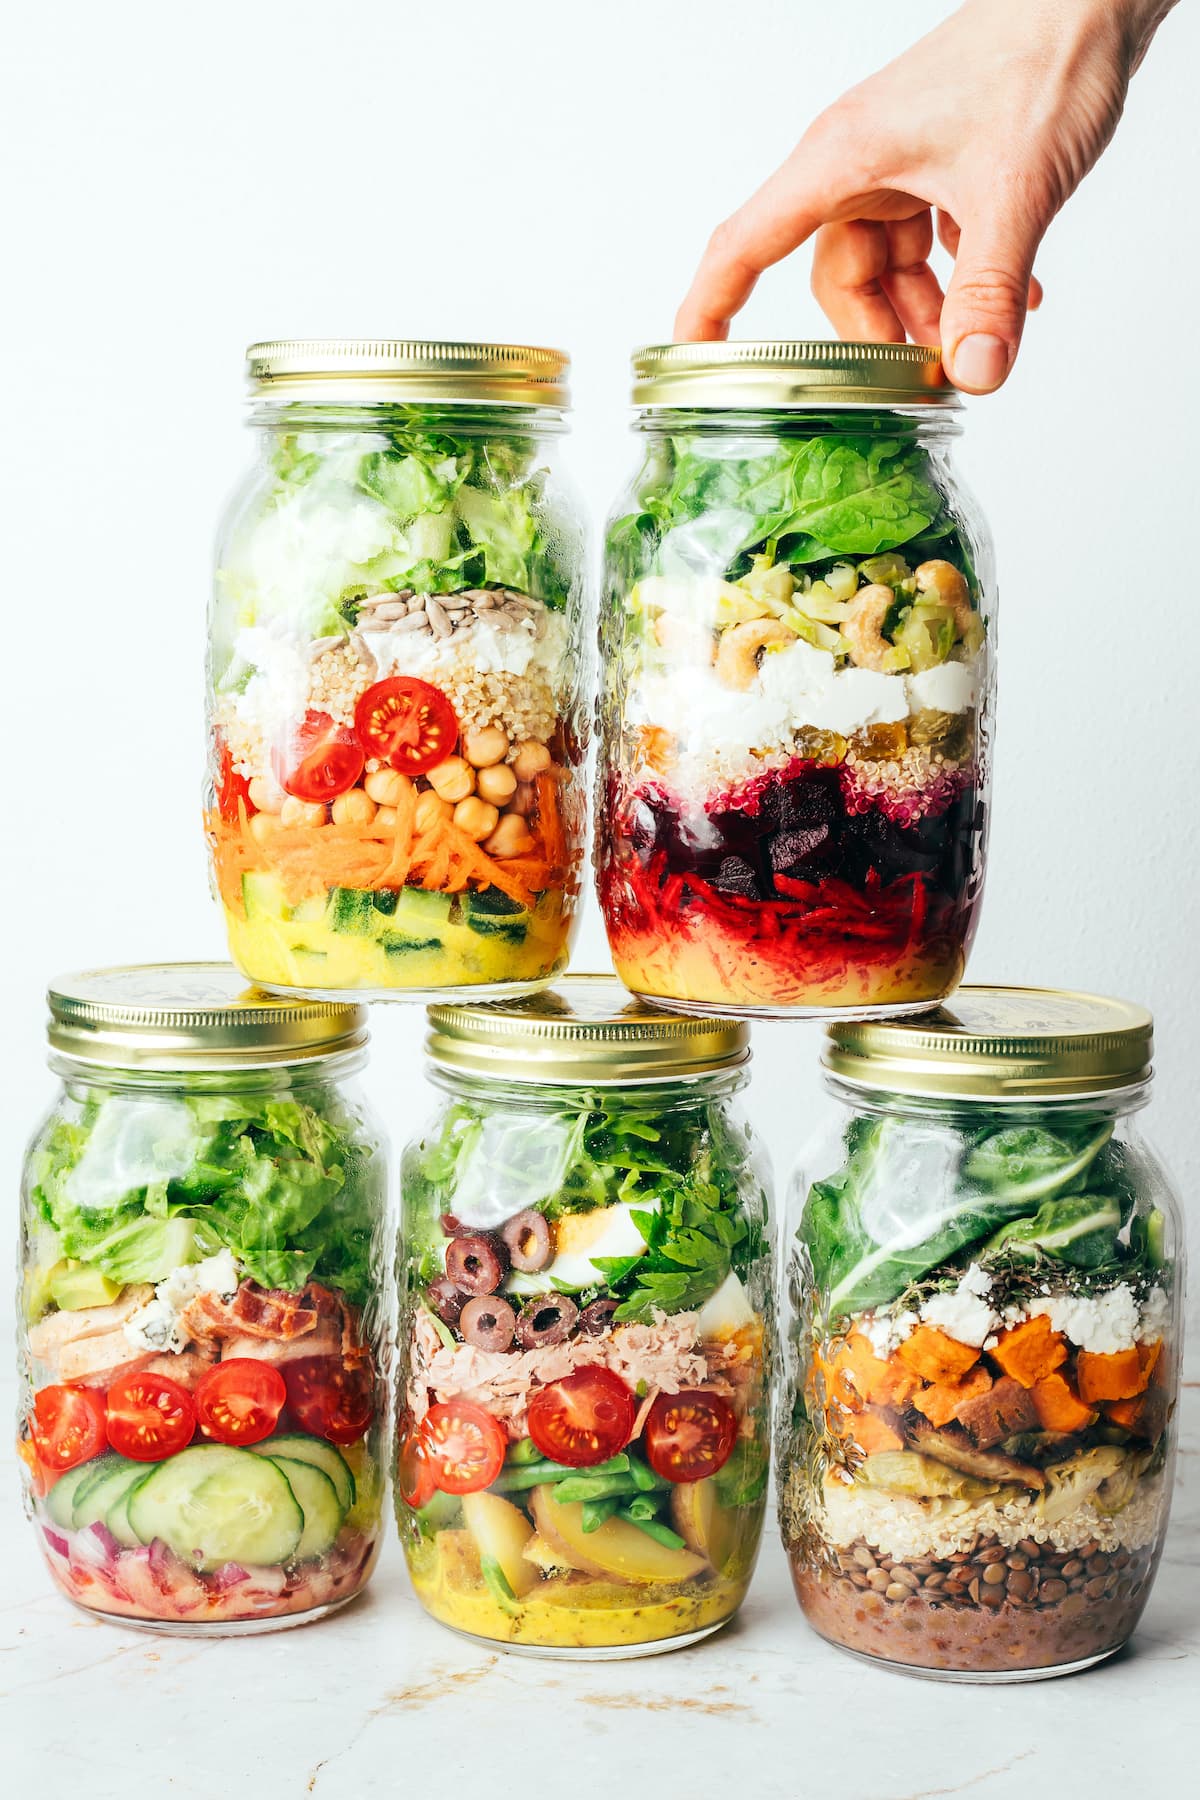 https://www.eatingbirdfood.com/wp-content/uploads/2022/05/salad-jar-group-stacked-jars.jpg